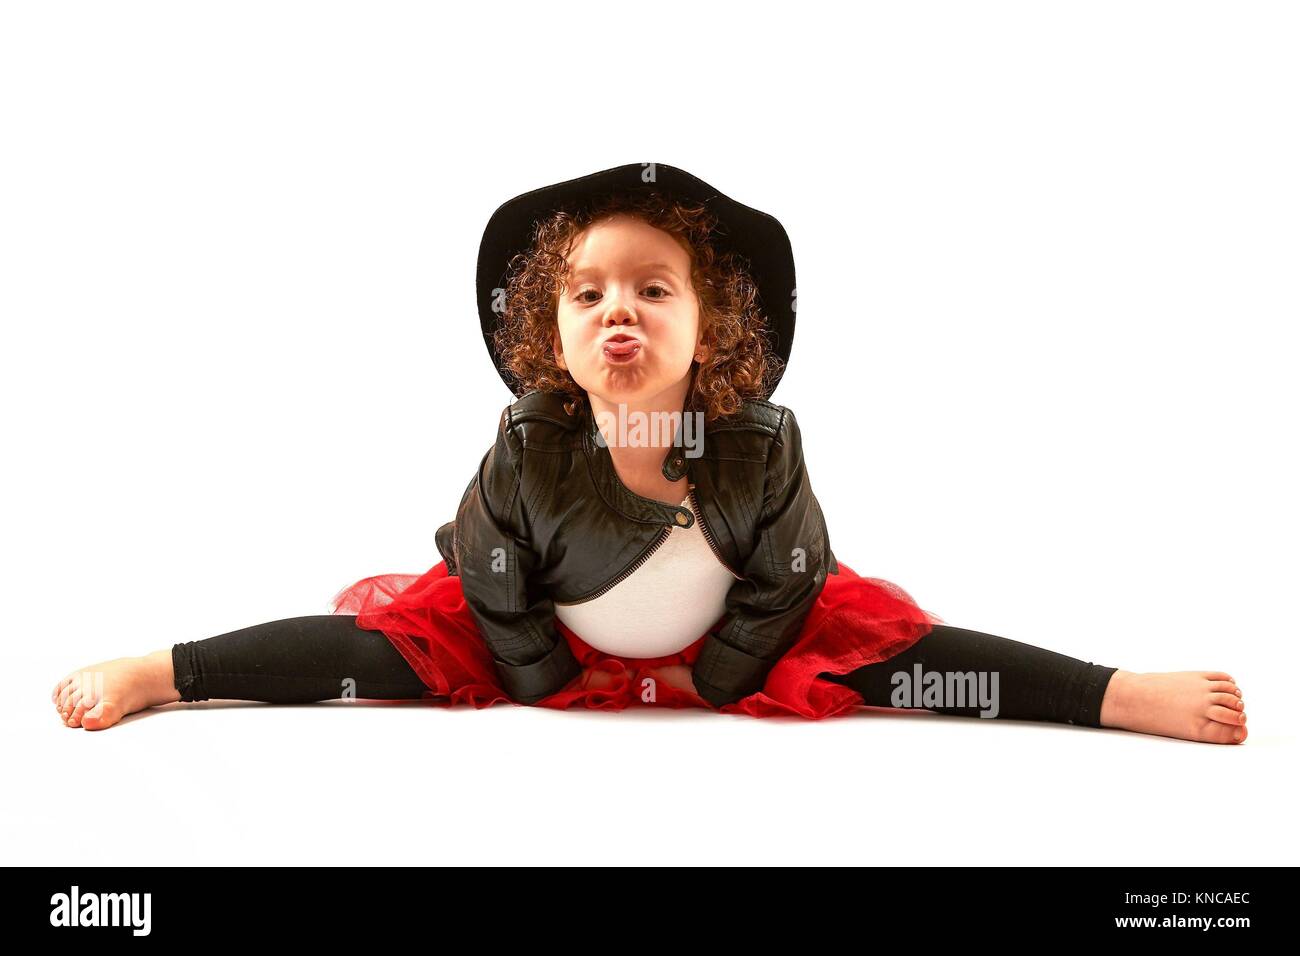 Bambina con cappello nero seduta ed Hamming. Foto Stock